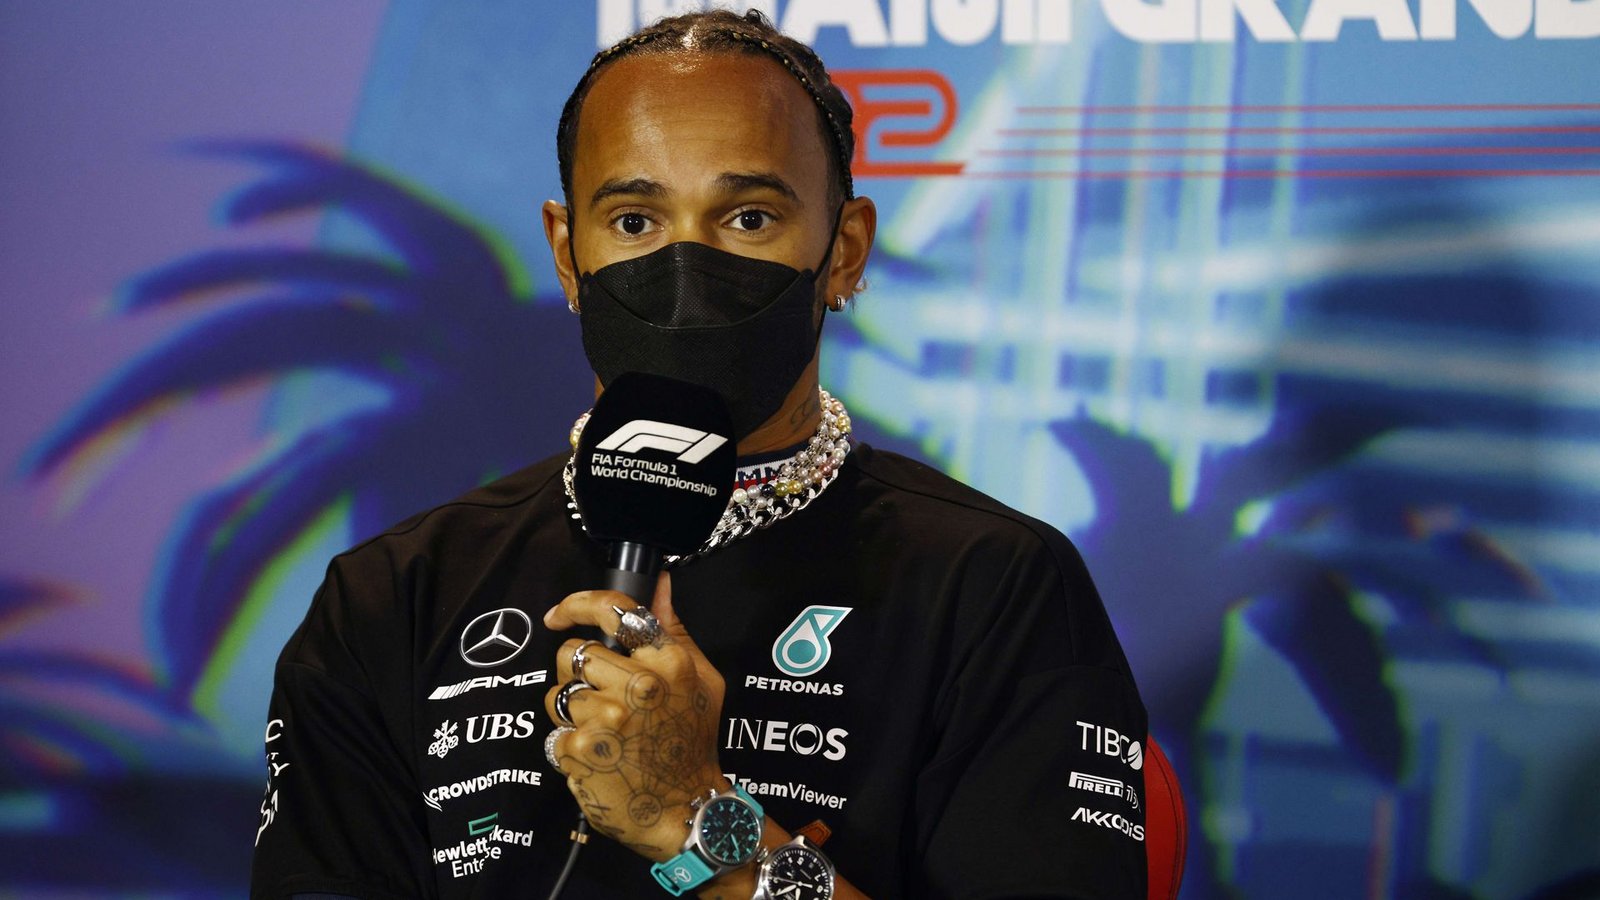 Lewis Hamilton hat das Schmuckverbot in der Formel 1 kritisiert.Foto: AFP/Jared C. Tilton